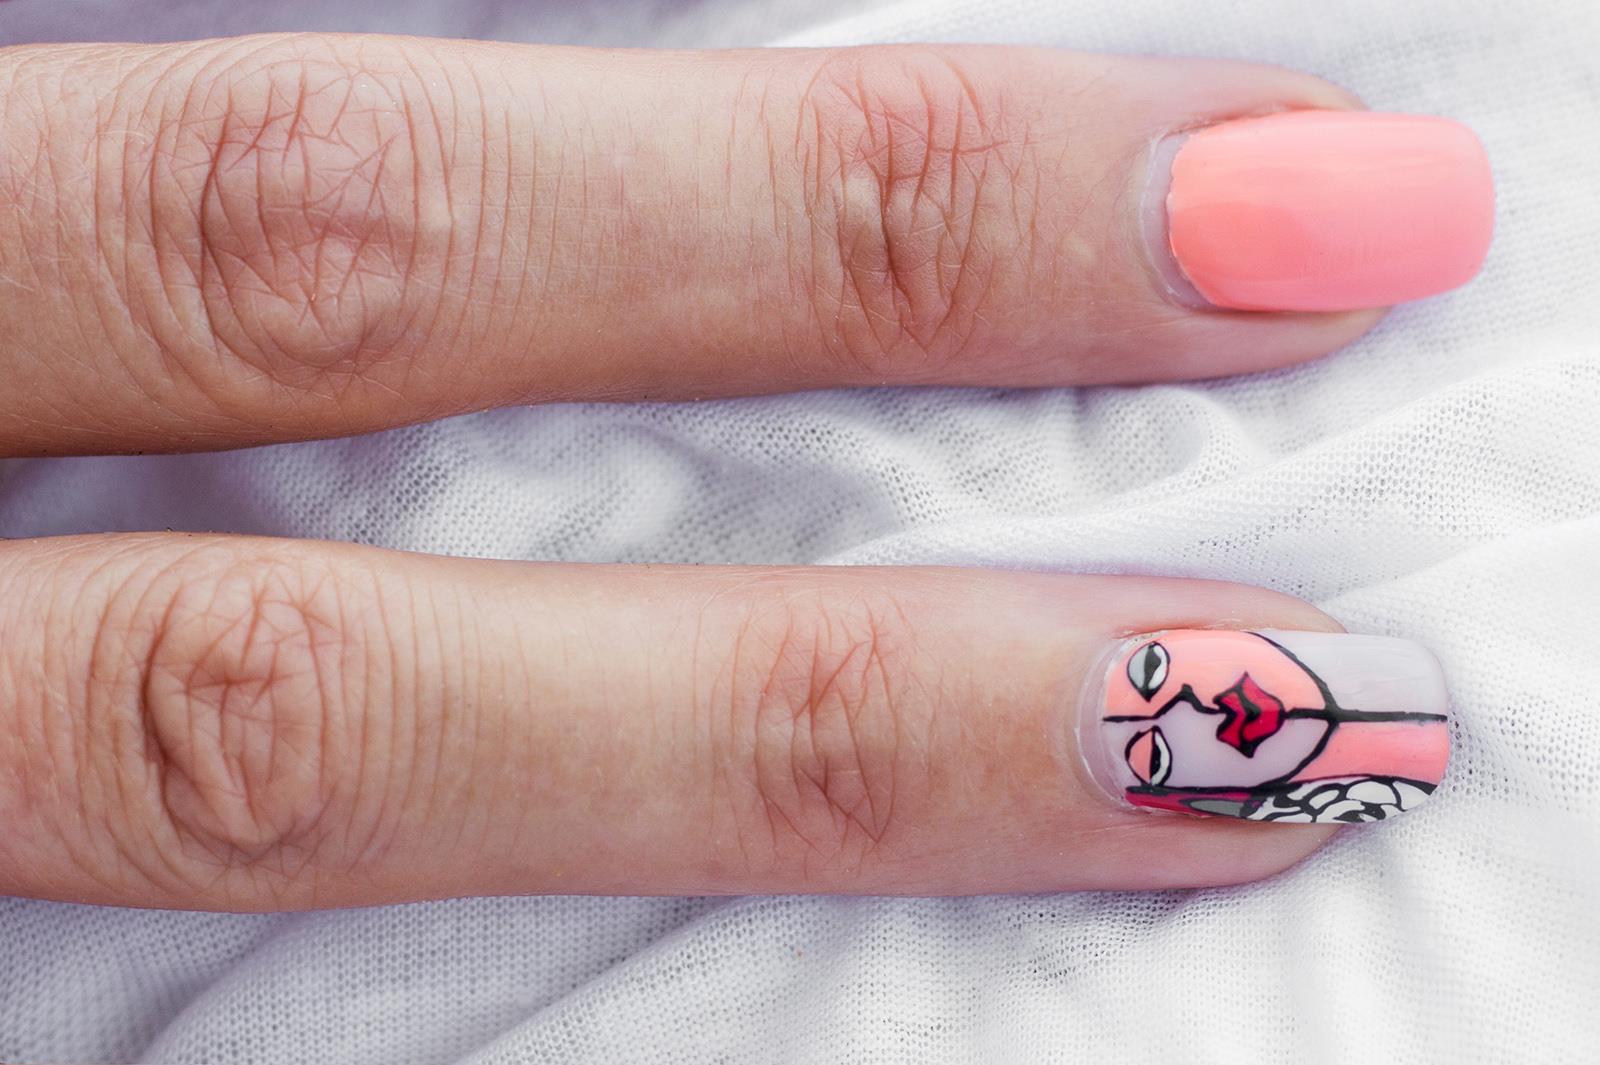 Come fare da te le unghie gel rosa: 5 nail art semplici